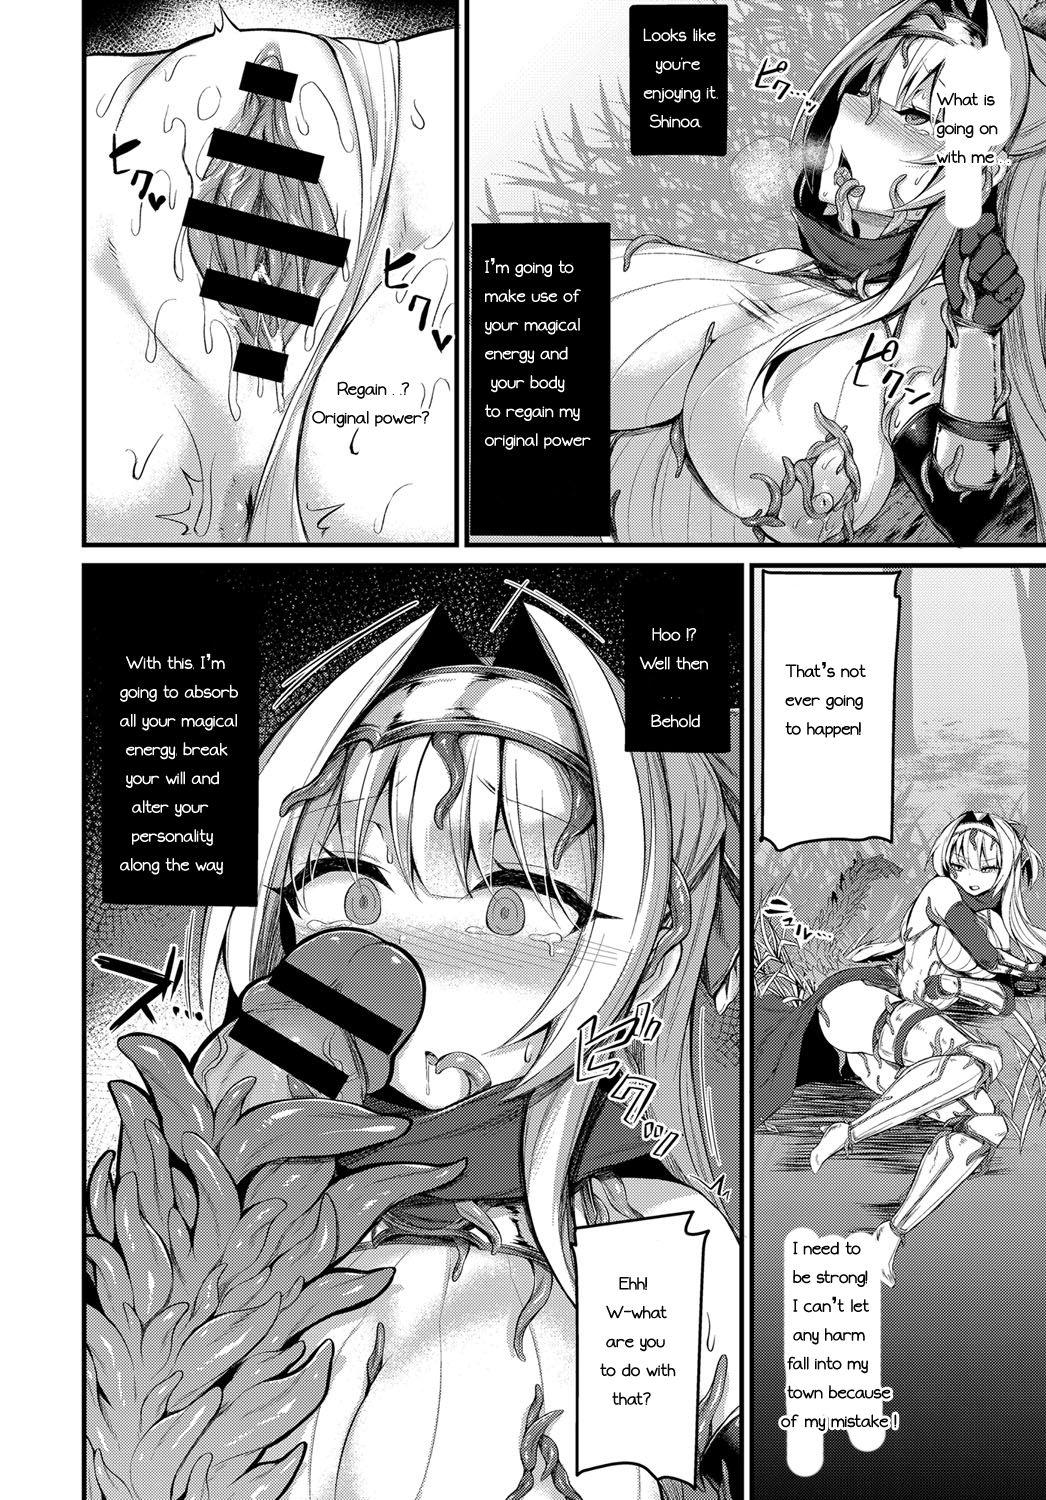 Buttfucking Etsuda no Kishi Shinoa Cogiendo - Page 10